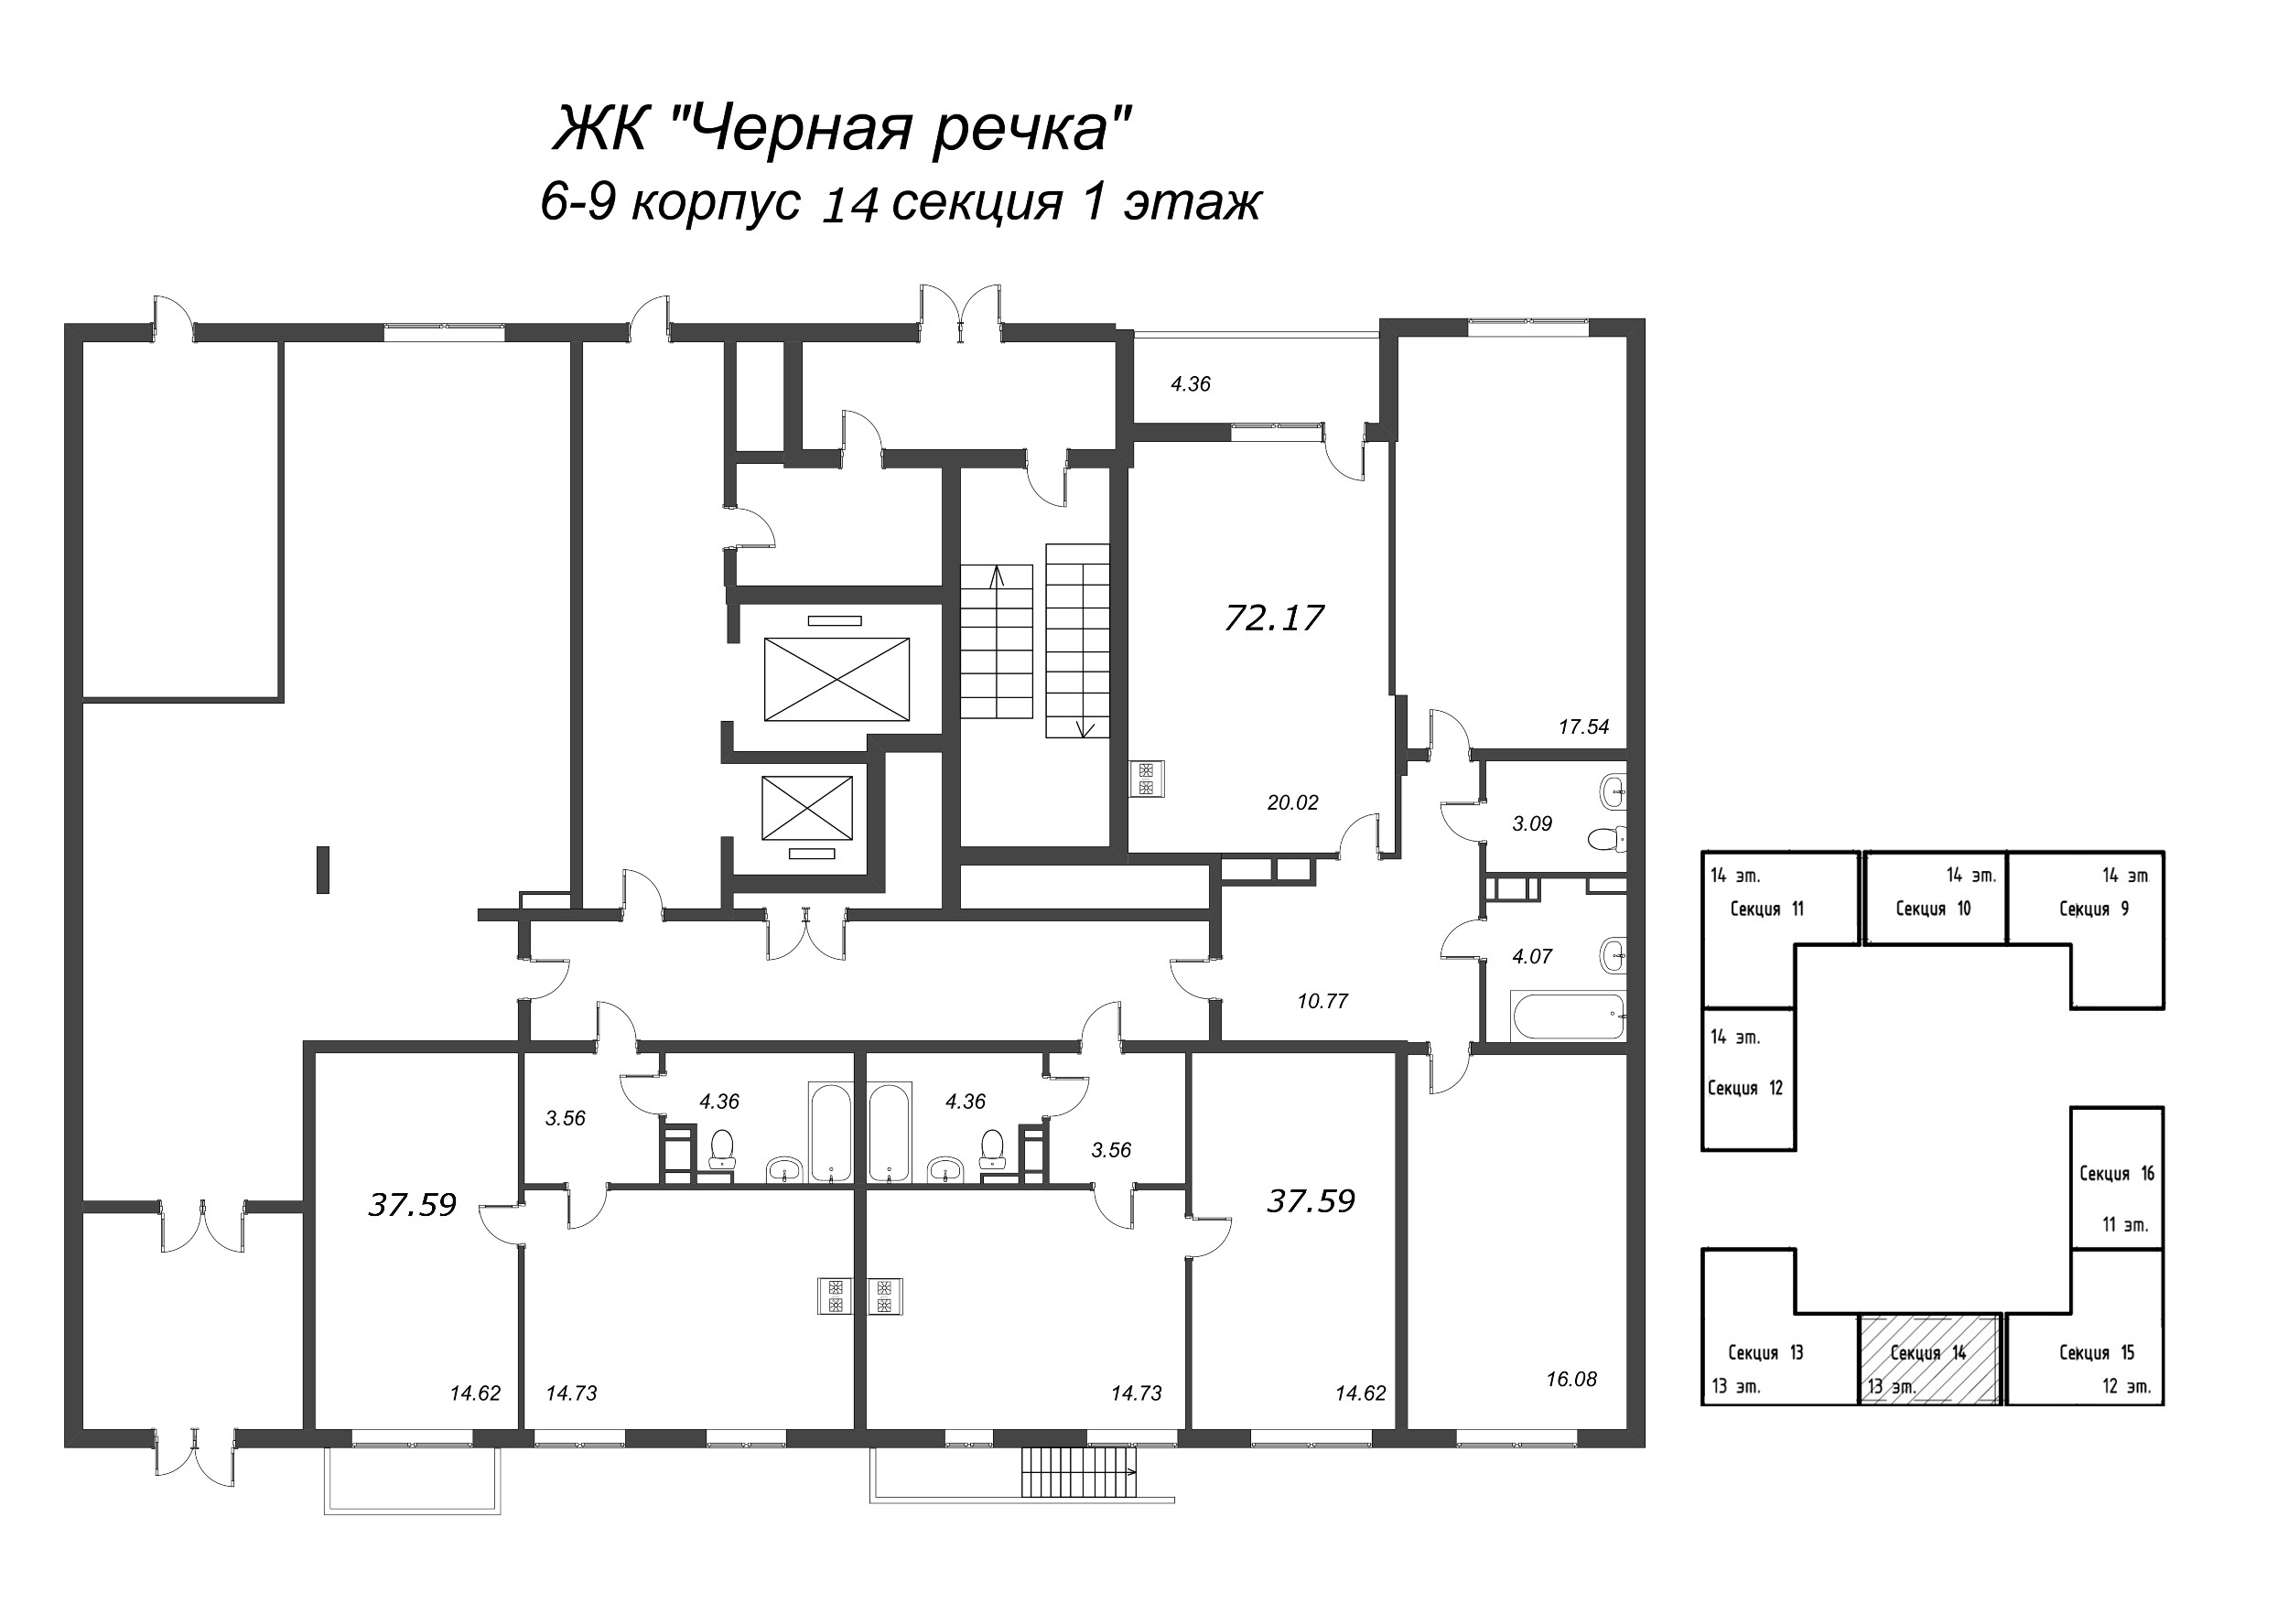 2-комнатная (Евро) квартира, 37.59 м² в ЖК "Чёрная речка" - планировка этажа